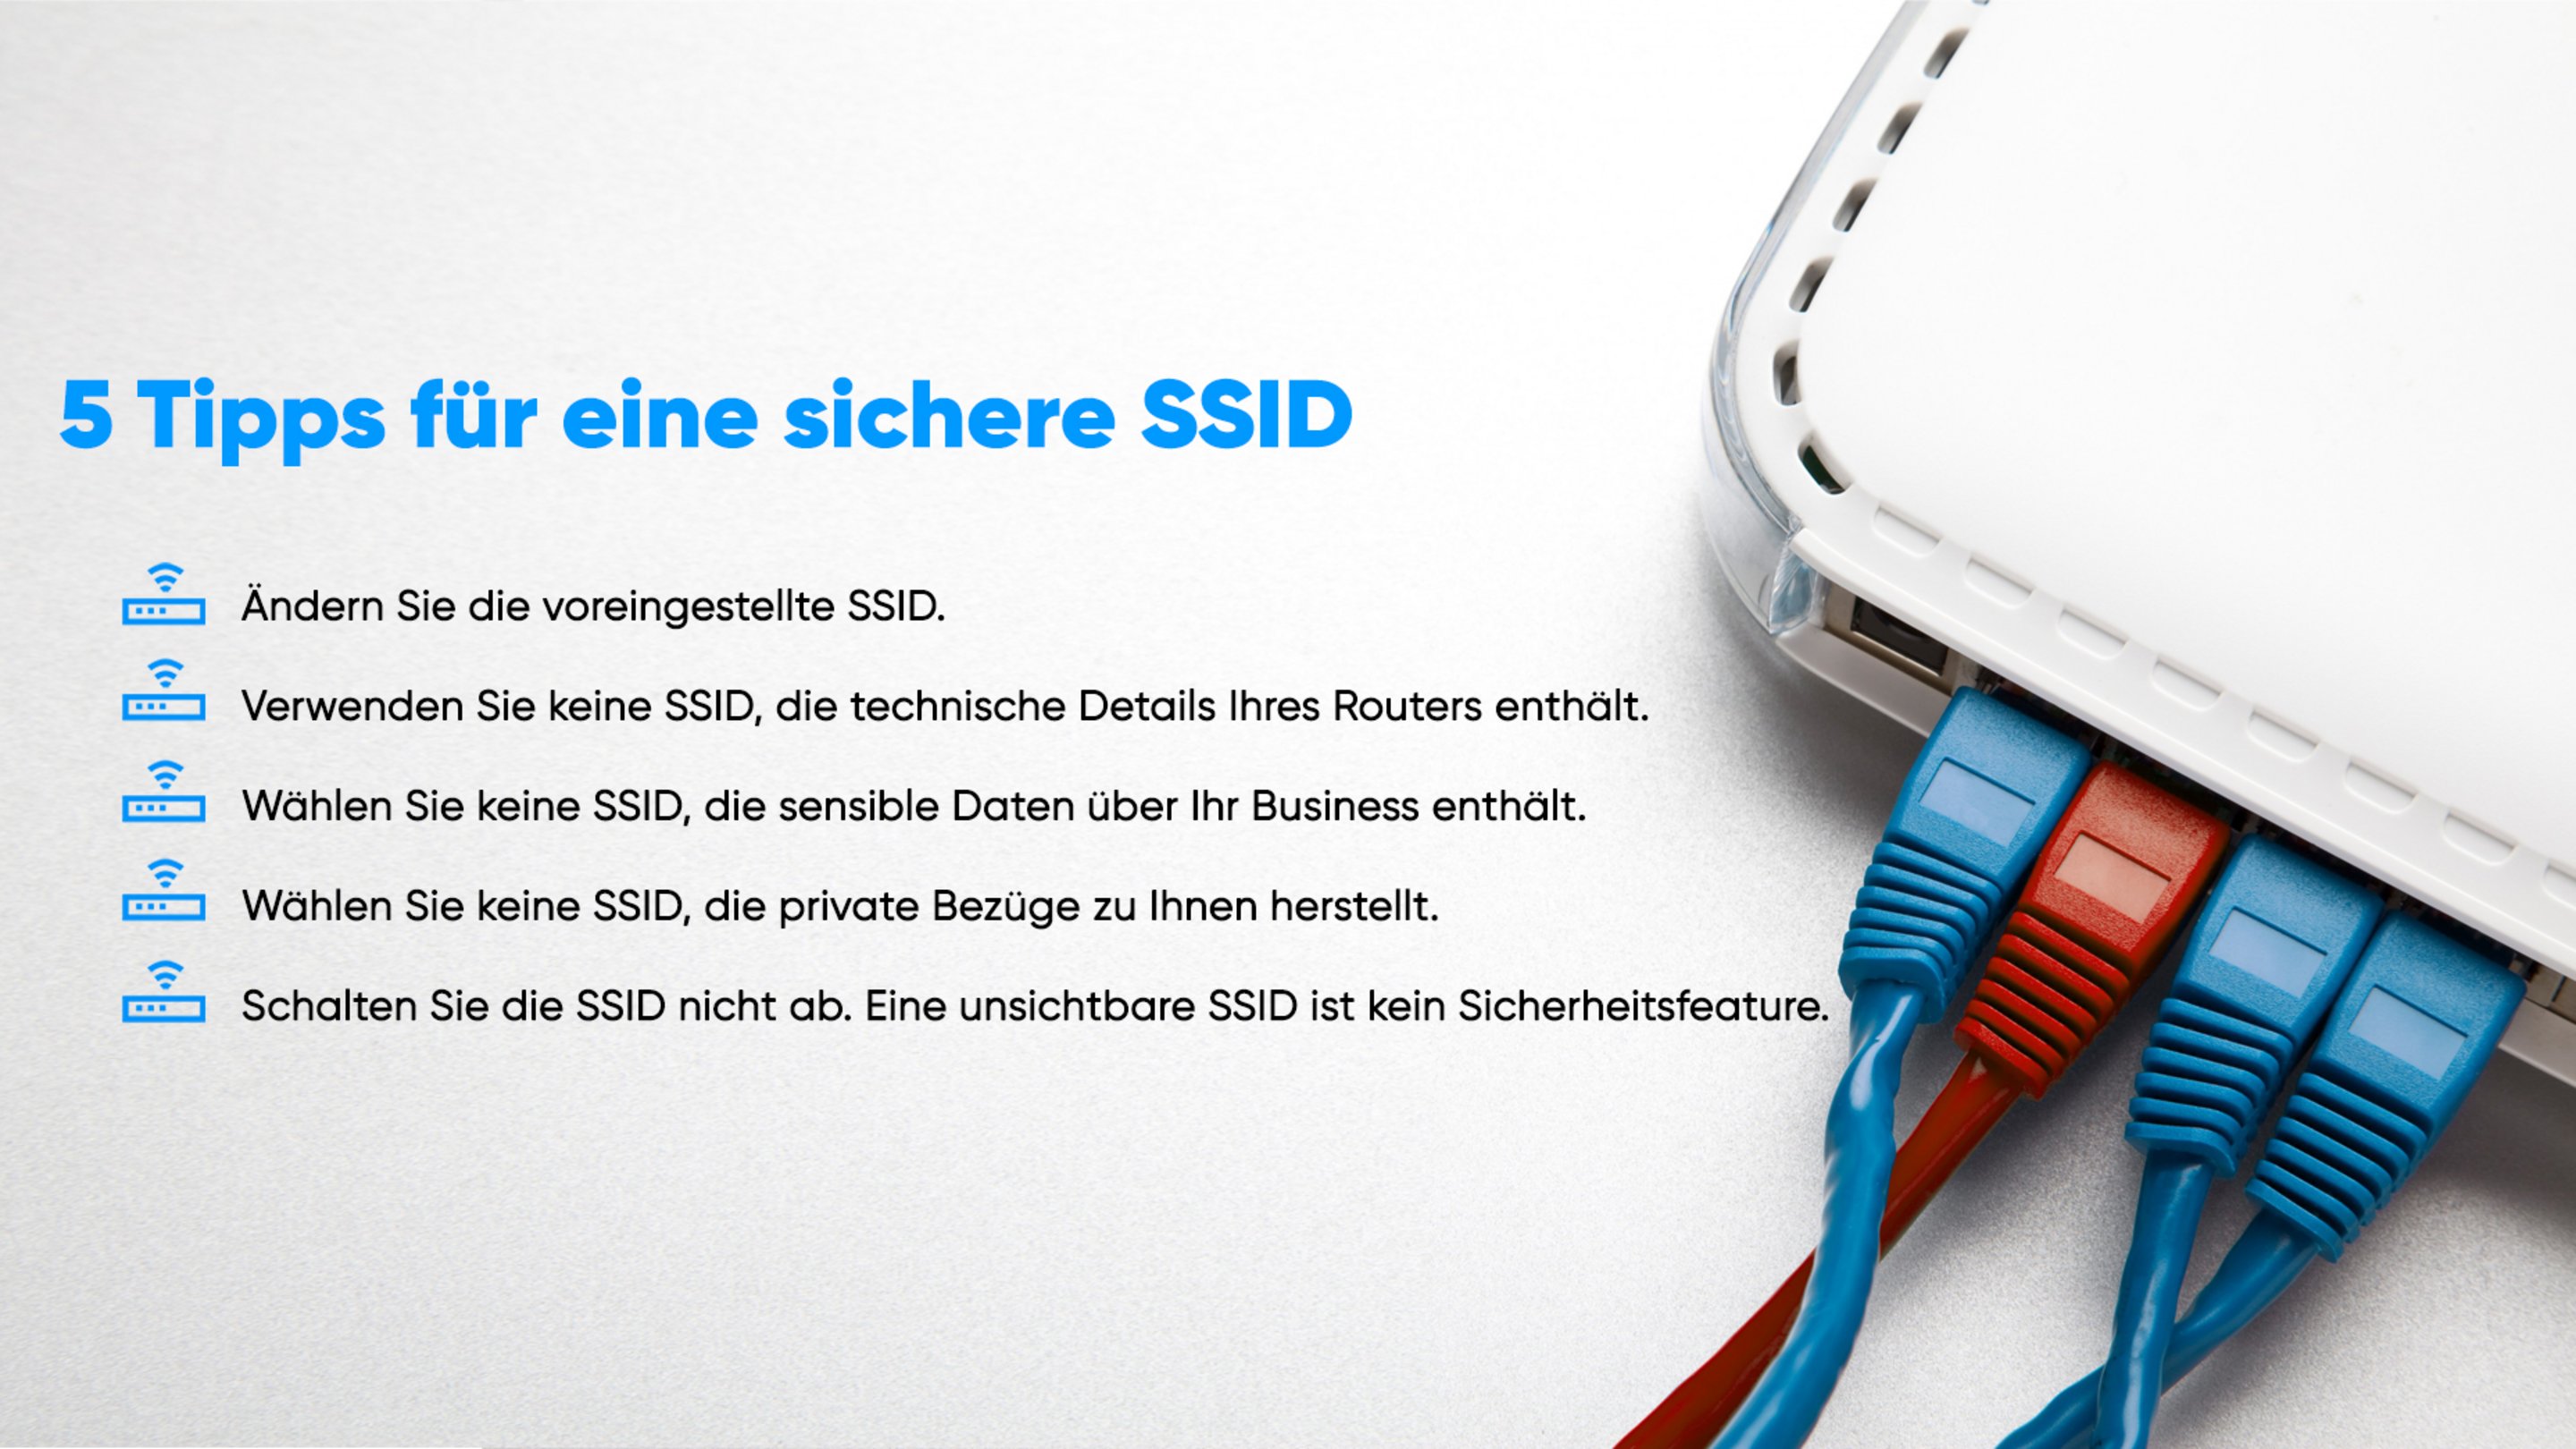 Ändern Sie die voreingestellte SSID. Verwenden Sie keine SSID, die technische Daten Ihre Routers enthält. Wählen Sie keine SSID, die sensible Daten über Ihr Business enthält. Wählen Sie keine SSID, die private Bezüge zu Ihnen herstellt. Schalten Sie die SSID nicht ab, eine unsichtbare SSID ist kein Sicherheitsfeature.